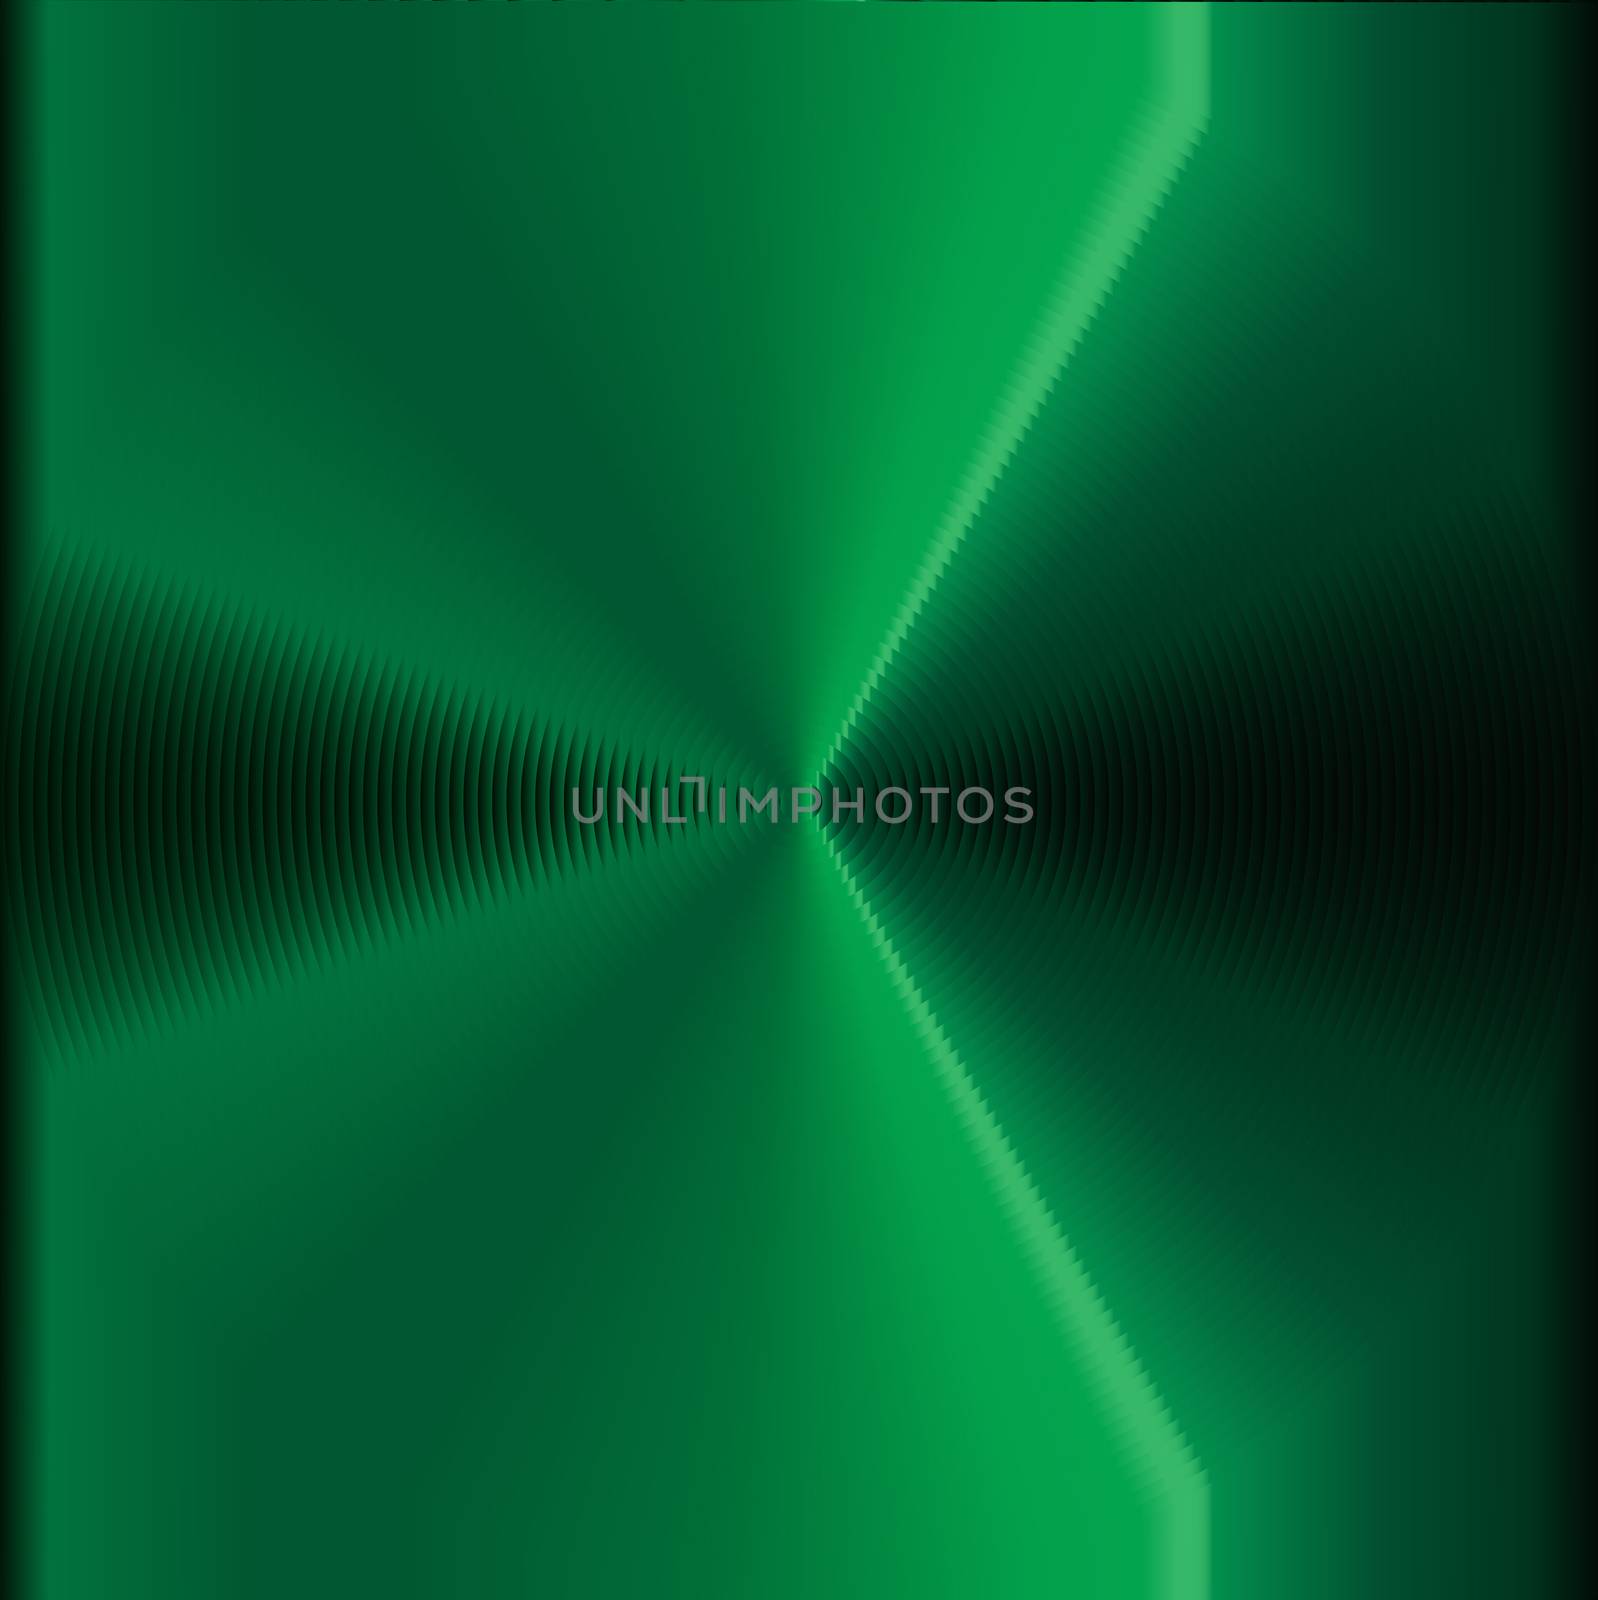 An abstract circles vertigo efect in green